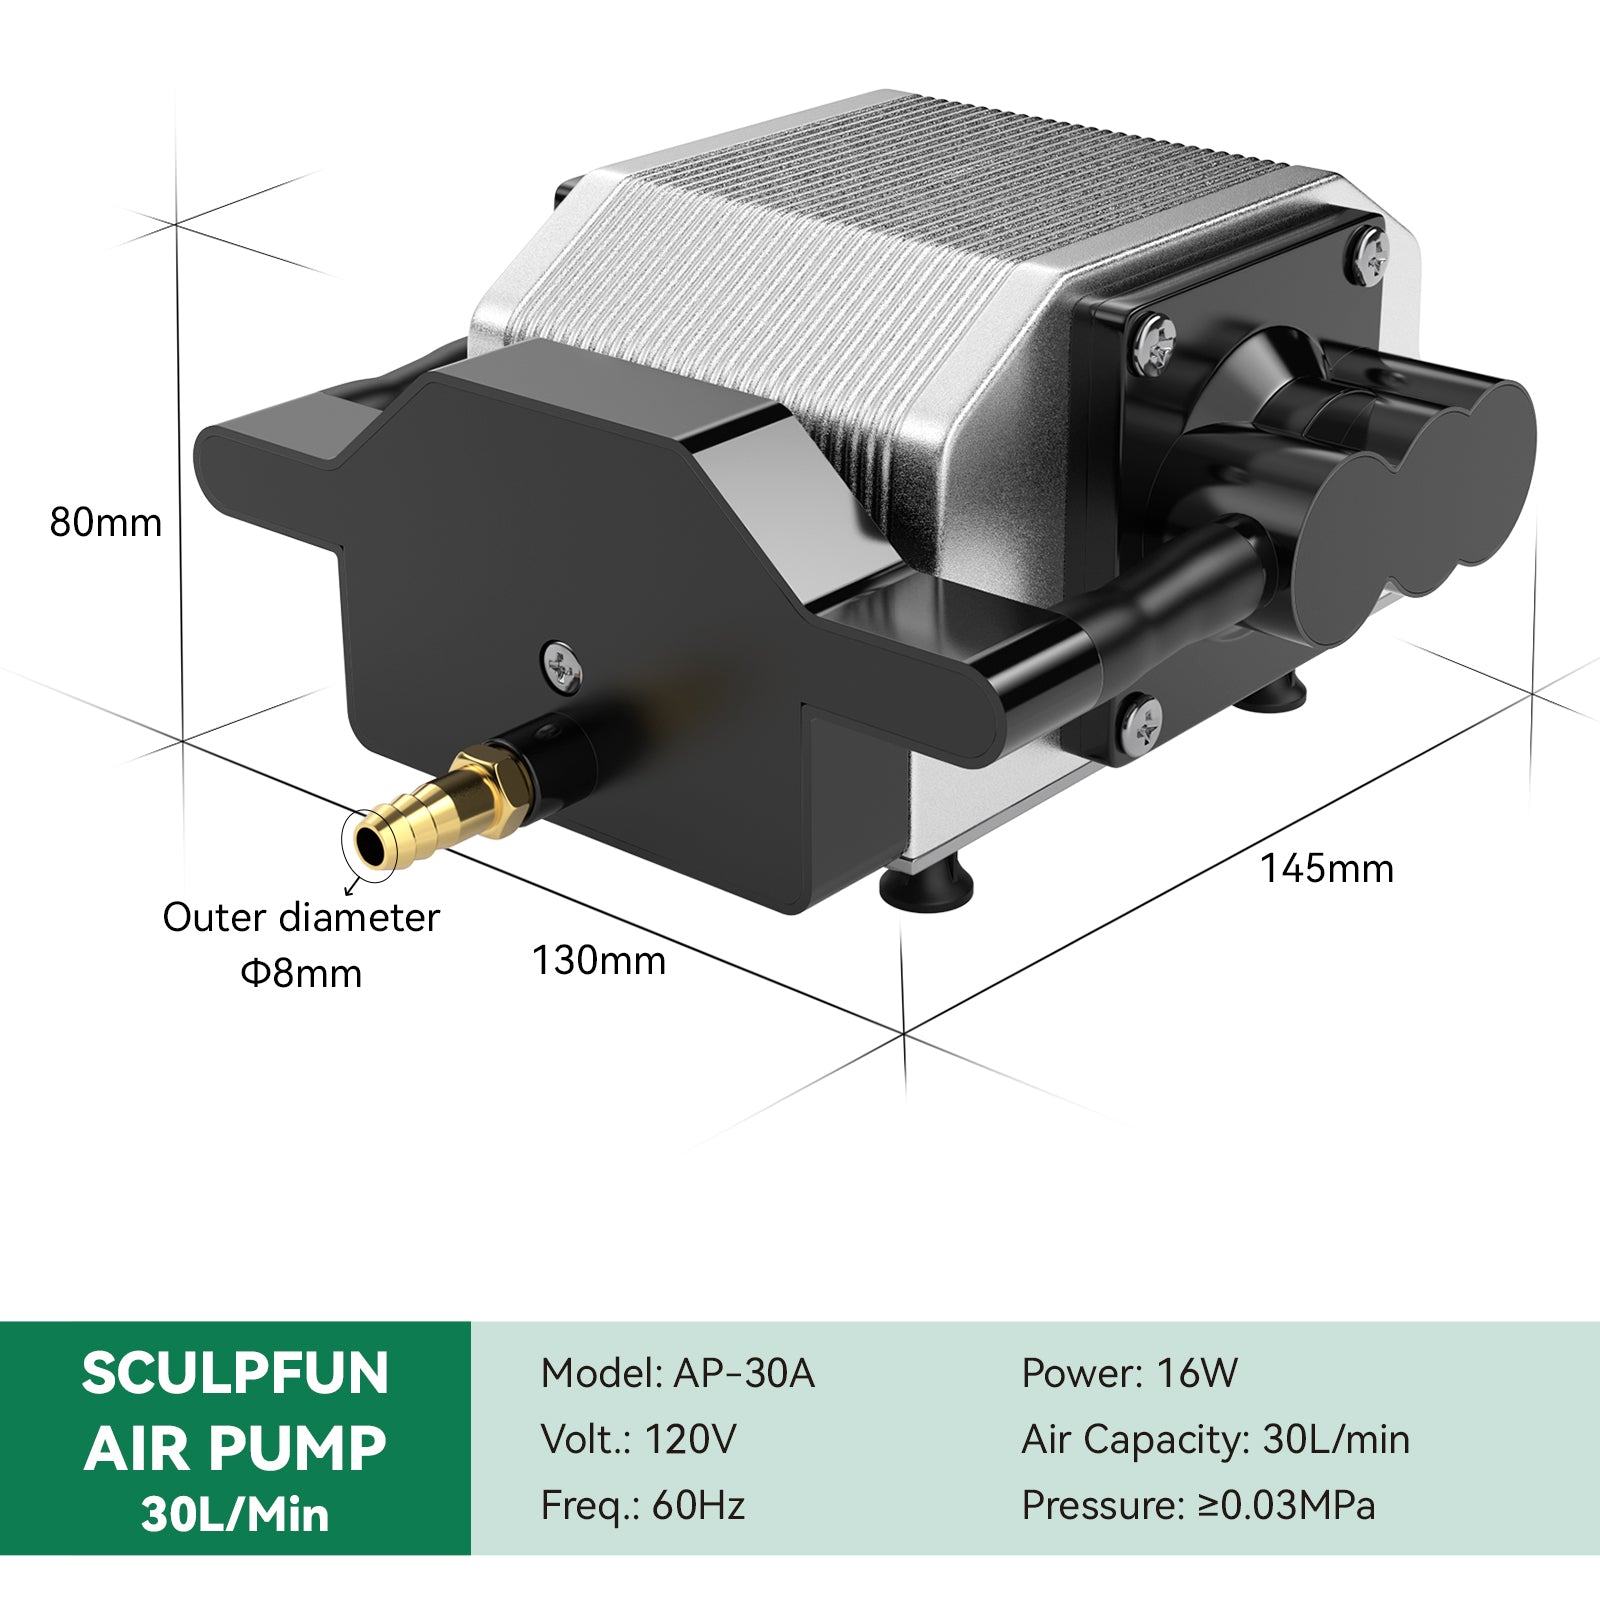 SCULPFUN 30L/Min Air Pump Air Compressor for Laser Engraving Machine